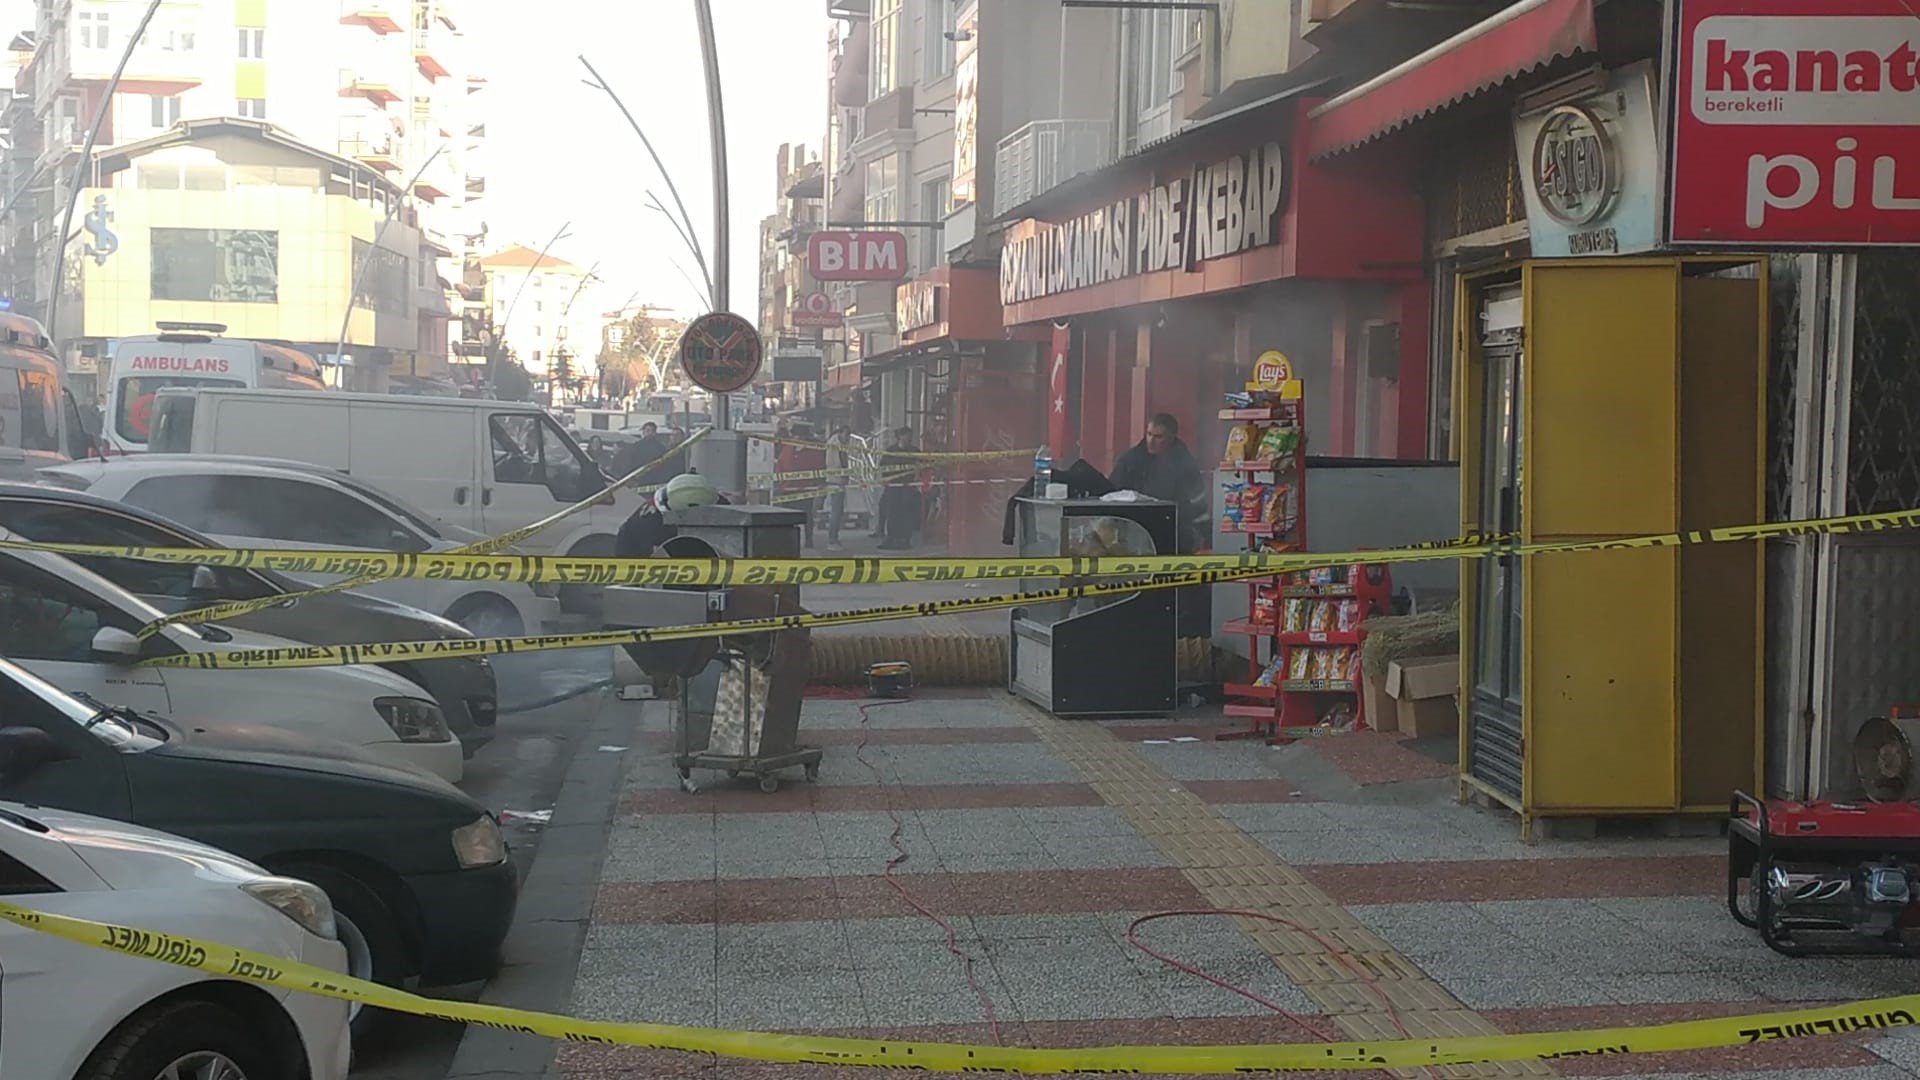 Uşak'ta mağaza yangını: 1 ölü